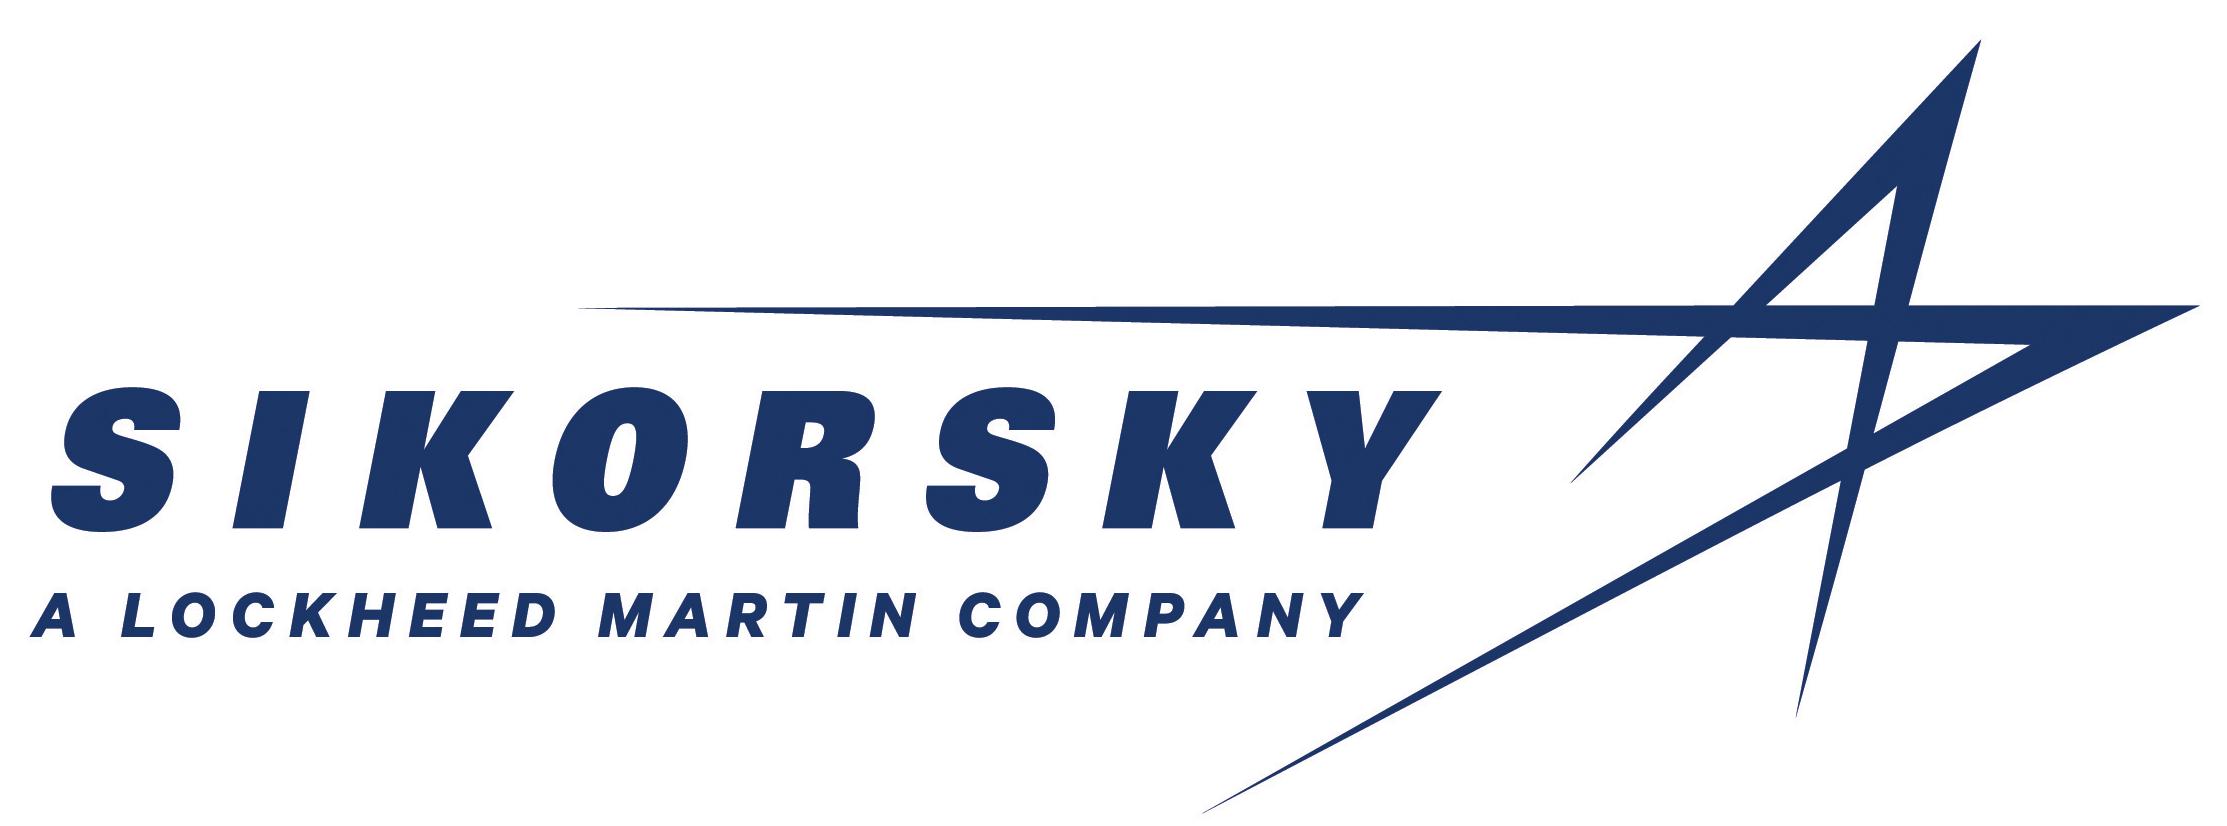 Aircraft Company Logo - Sikorsky Aircraft Logo.png